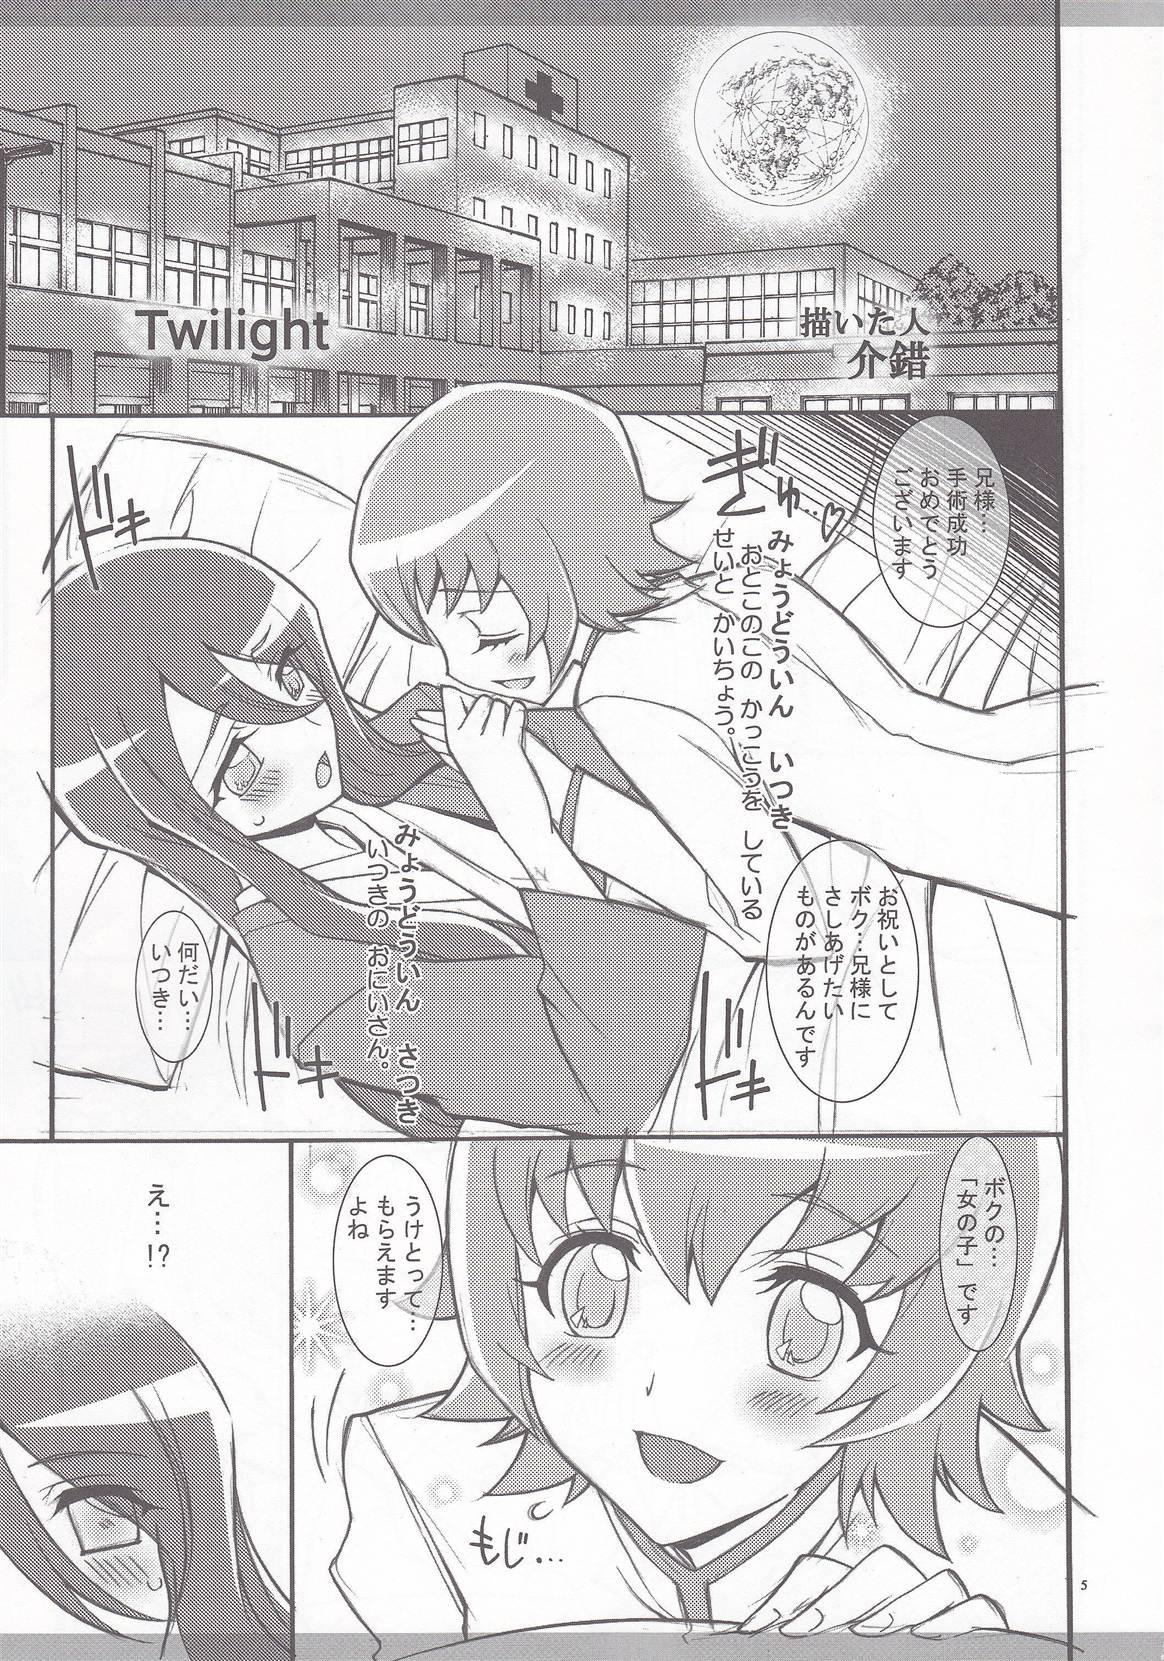 19yo Twilight ～Newmoon～ - Pretty cure Heartcatch precure Fake Tits - Page 4